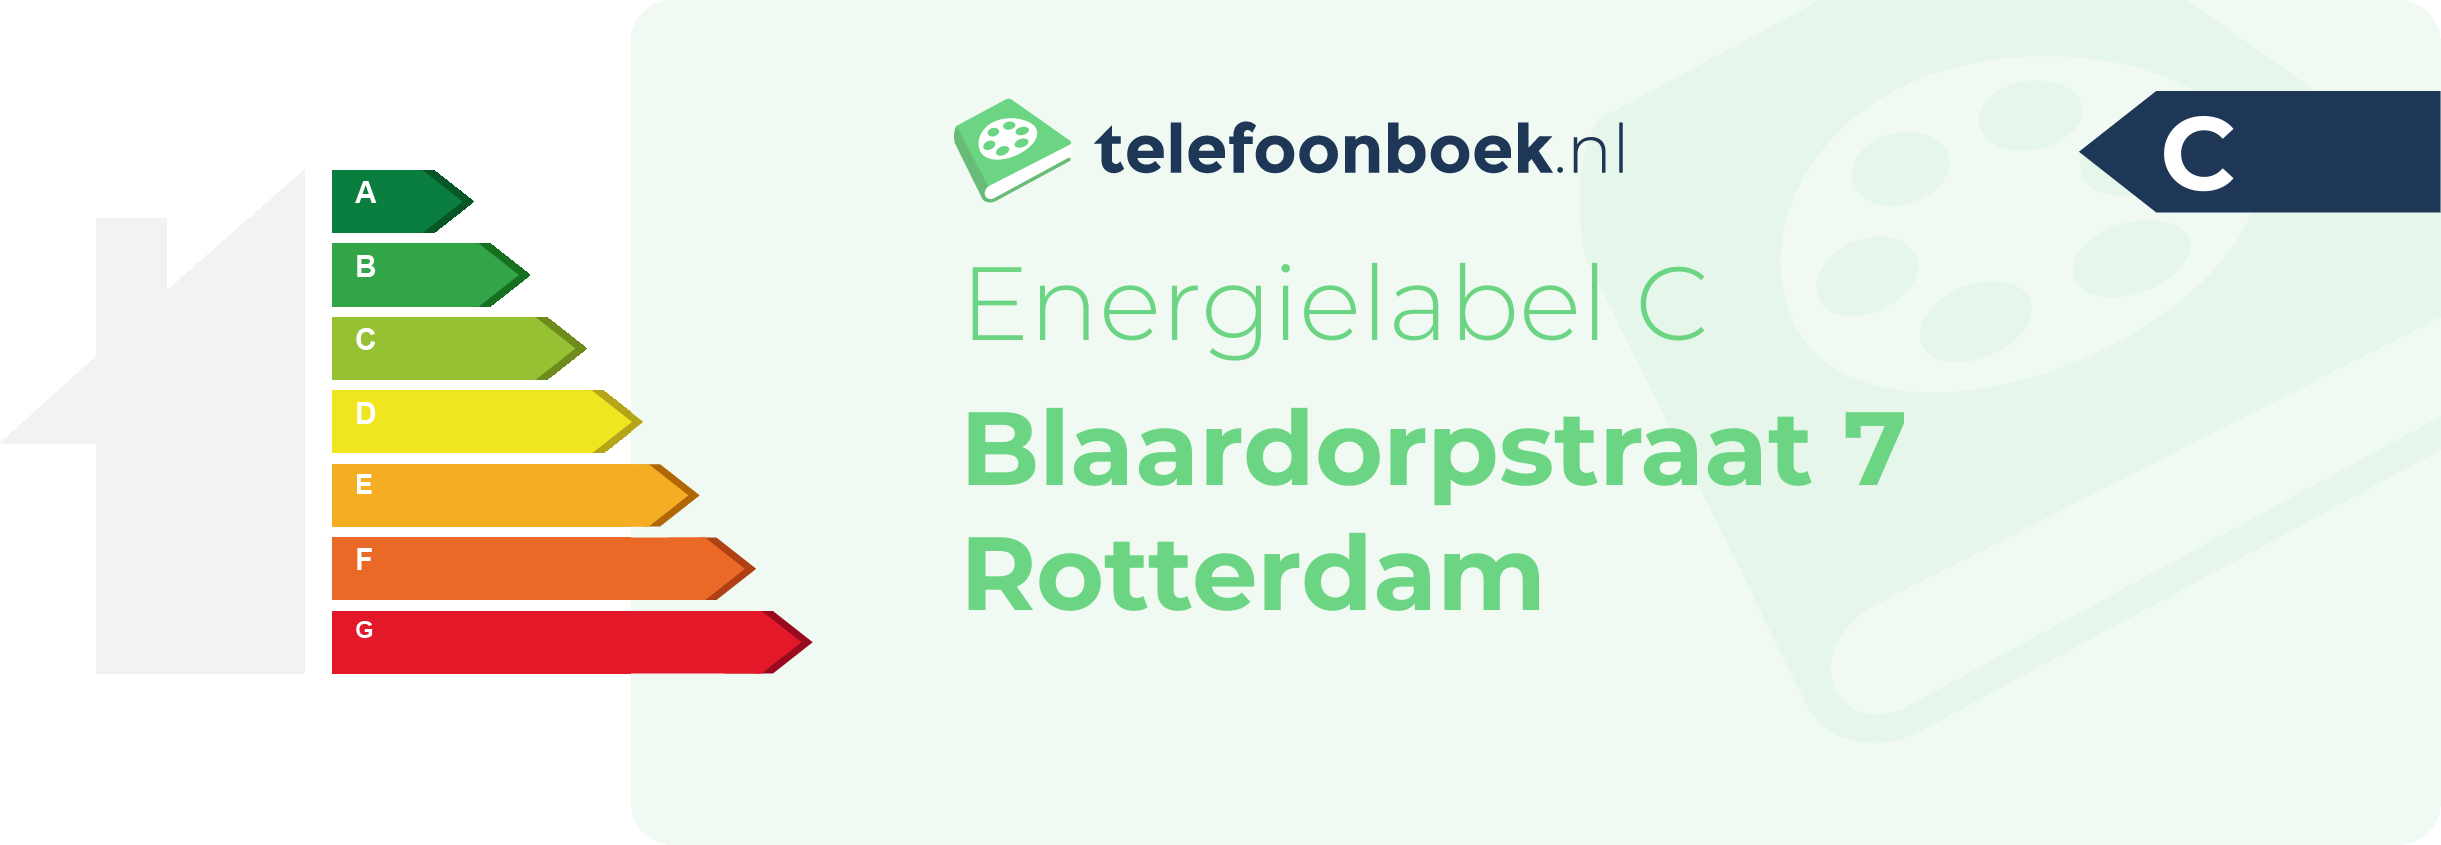 Energielabel Blaardorpstraat 7 Rotterdam